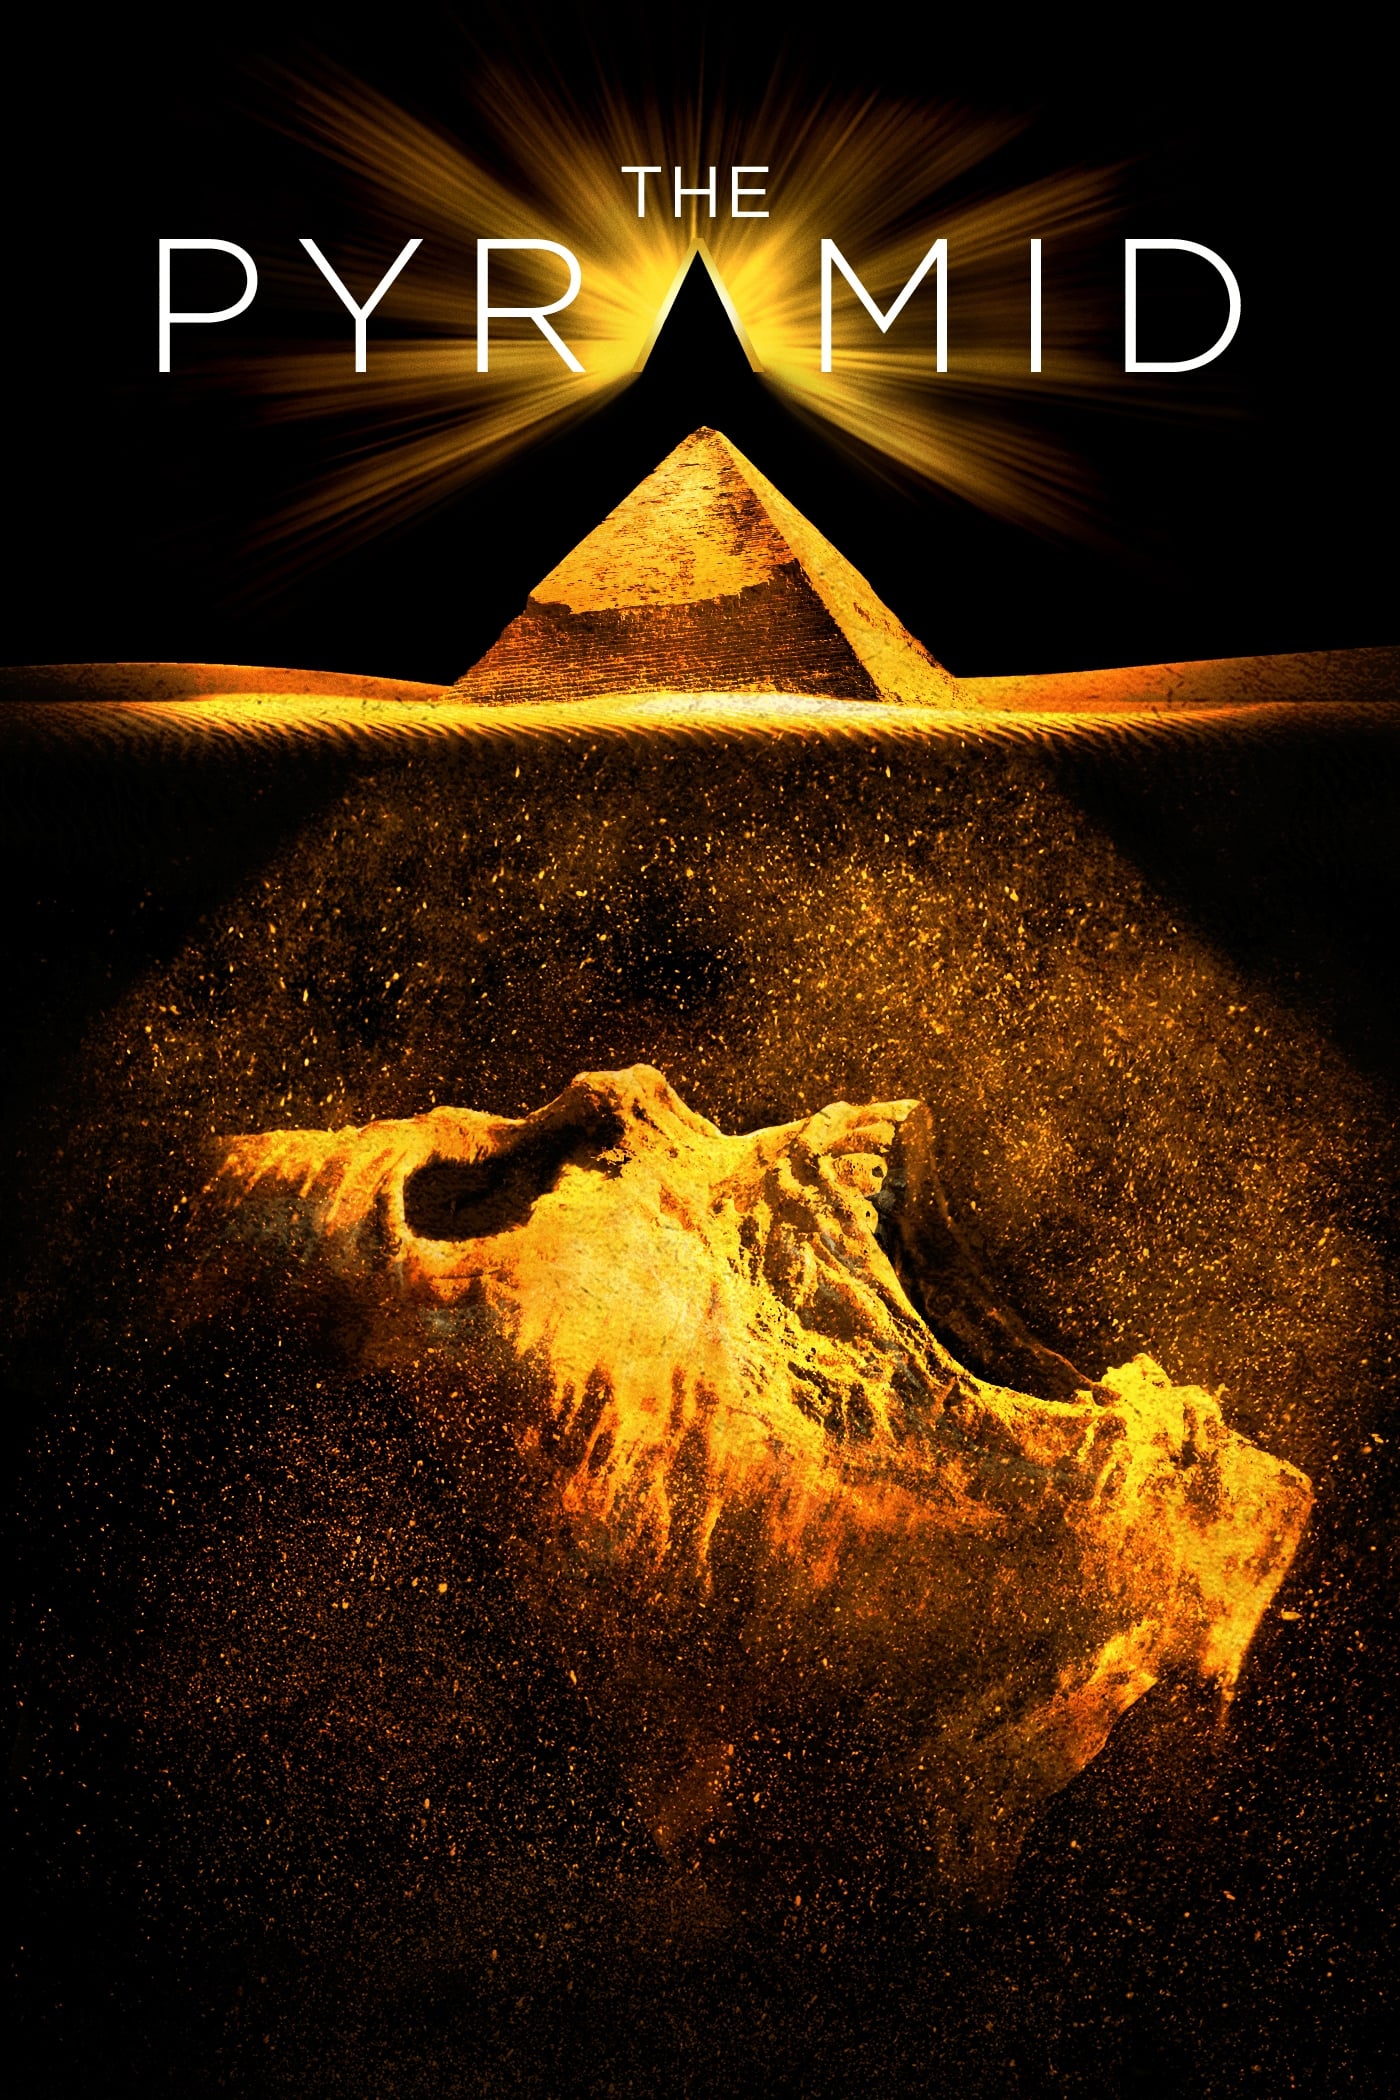 הפירמידה